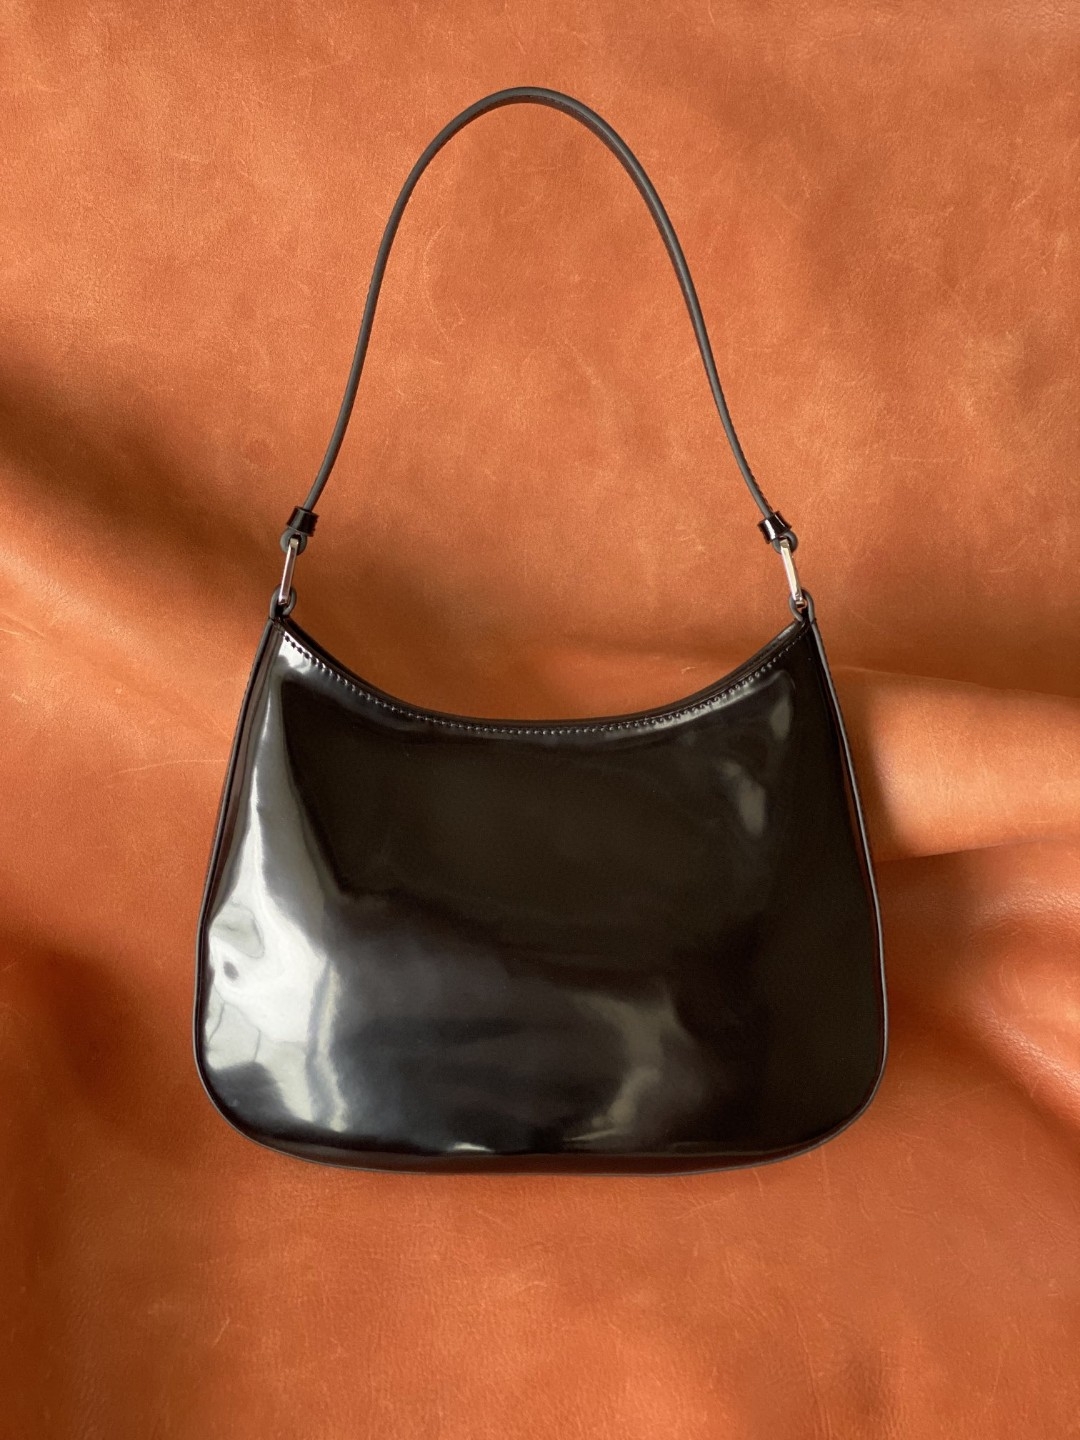 Kadınlar için parlak patent deri gümüş donanım omuz çantası